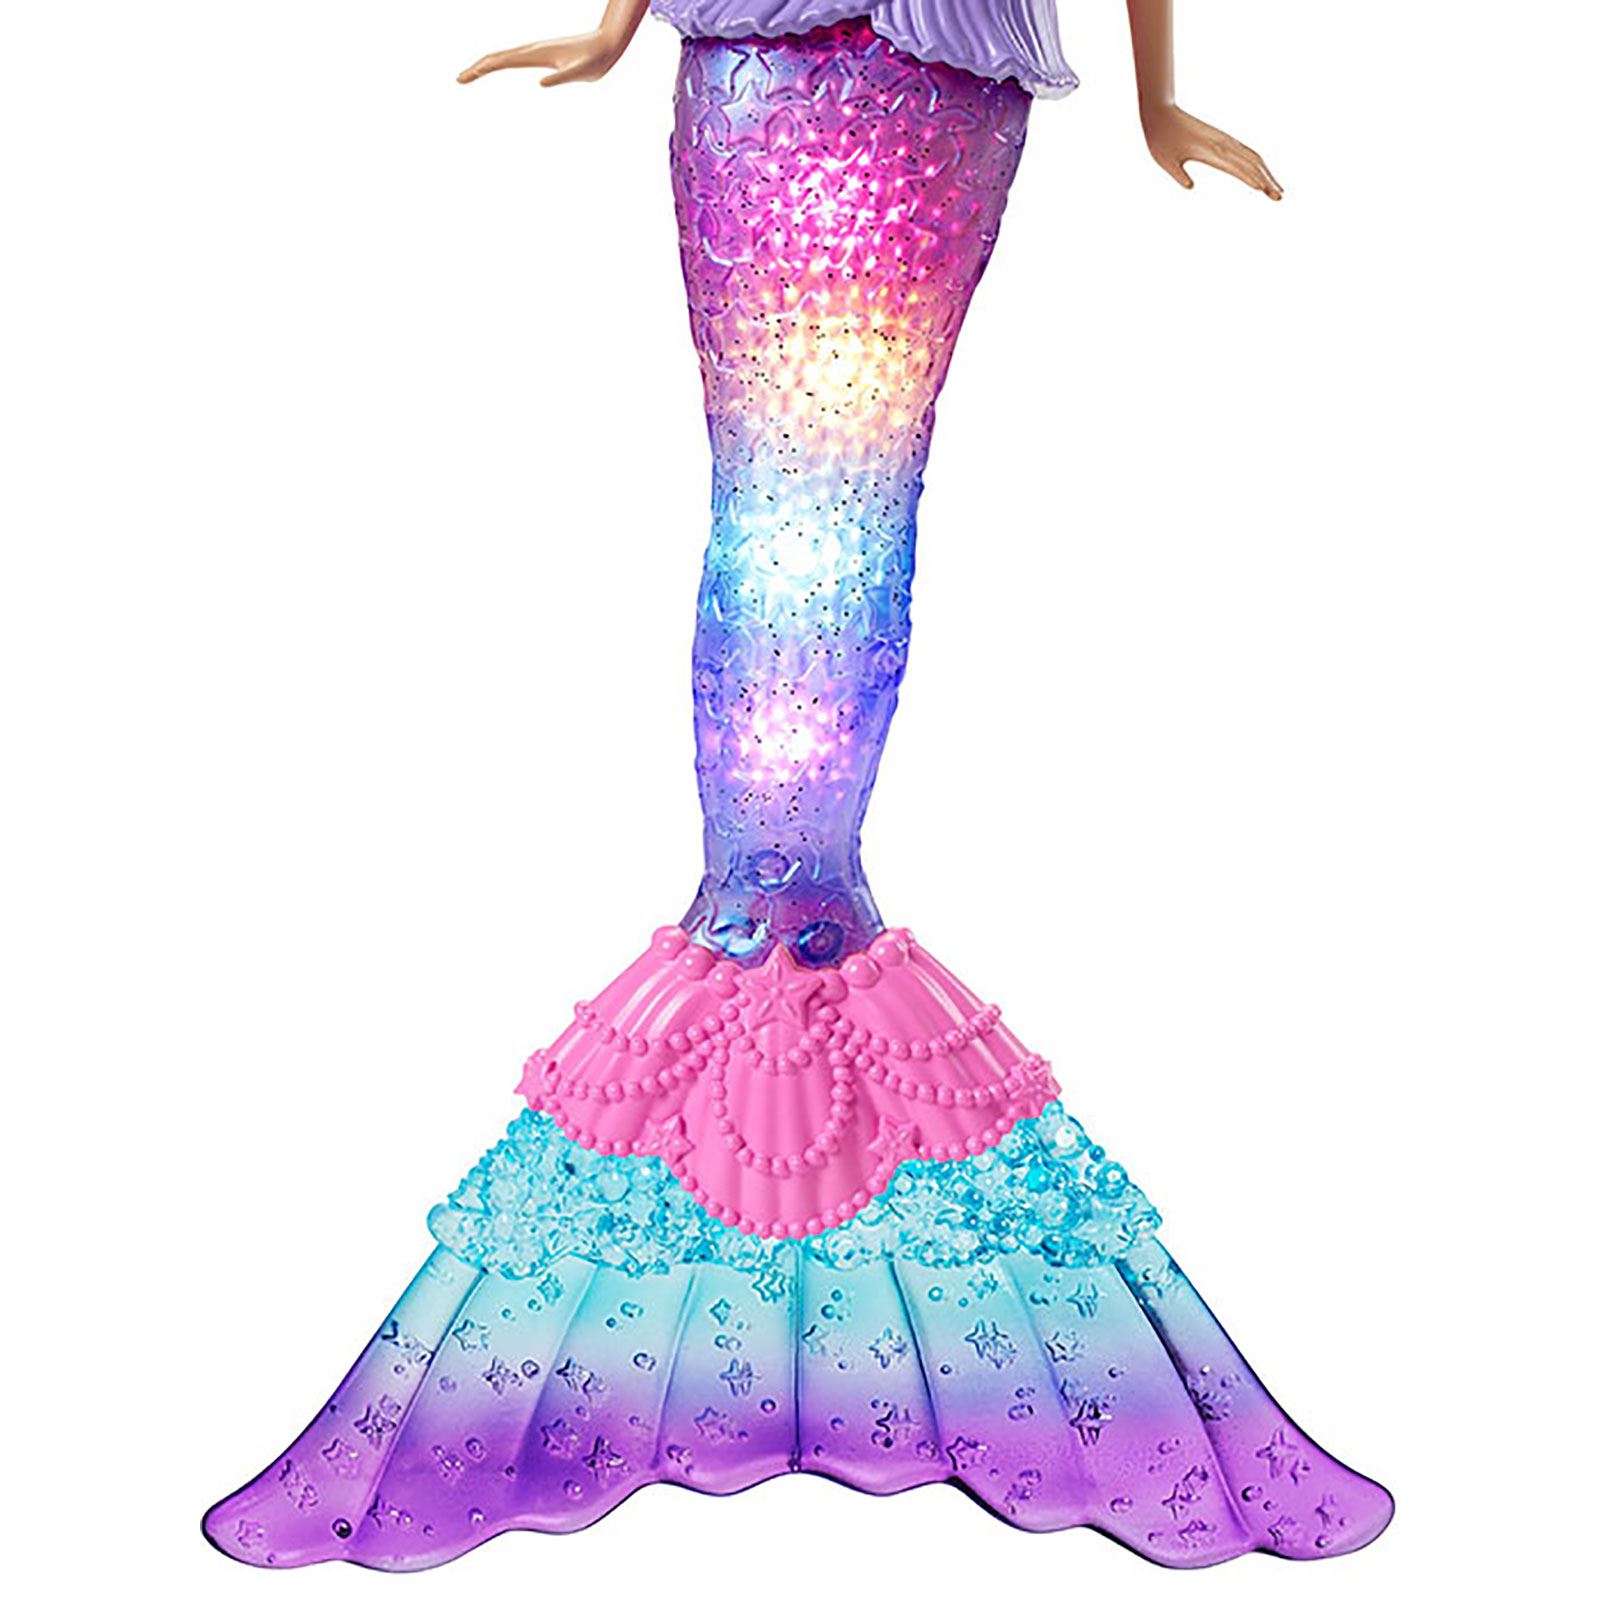 Barbie Dreamtopia Işıltılı Deniz Kızı Mavi 3+ Yaş